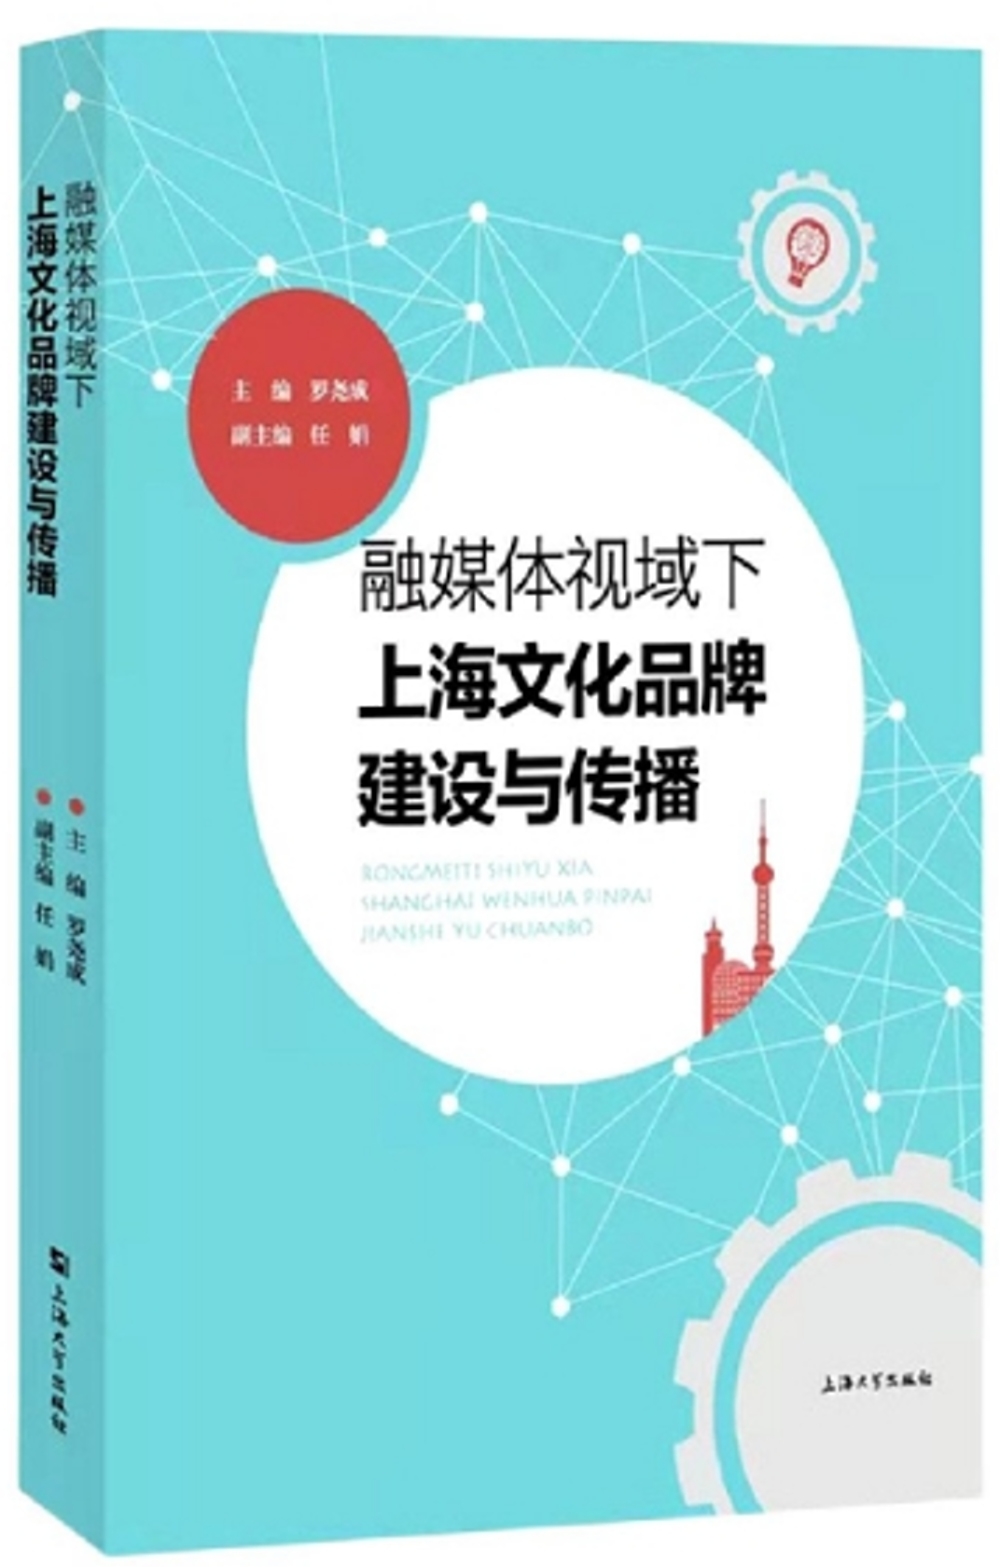 融媒體視域下上海文化品牌建設與傳播